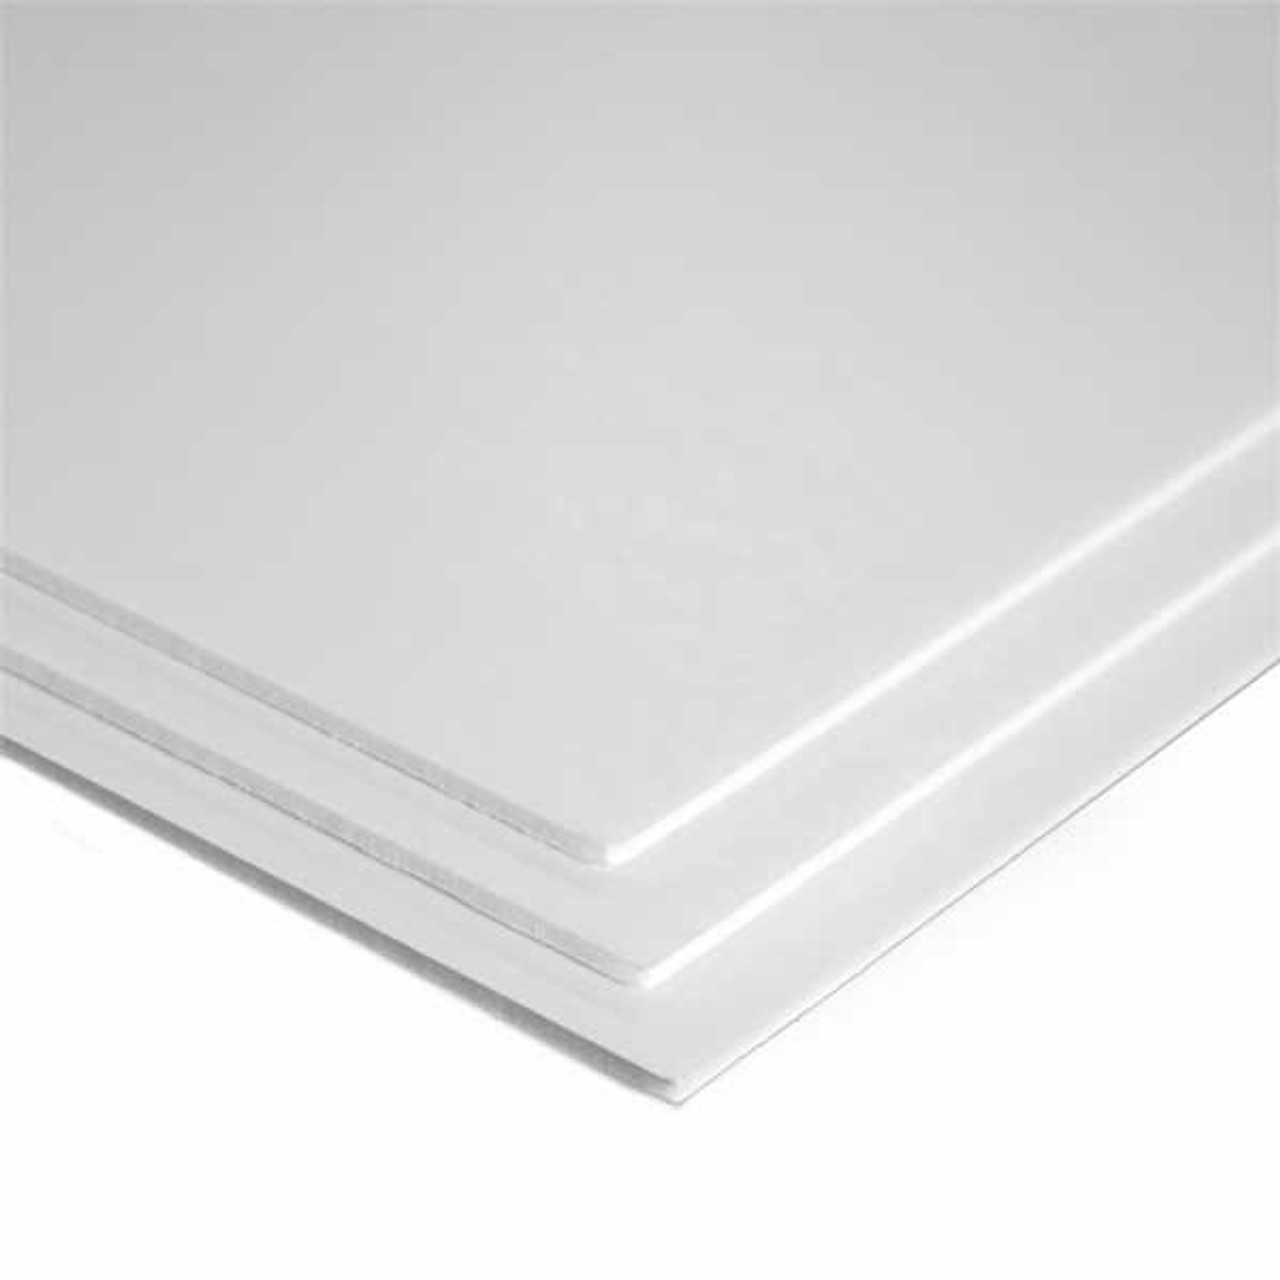 White Foam Board - 48 x 96 x 3/16, Pkg of 25